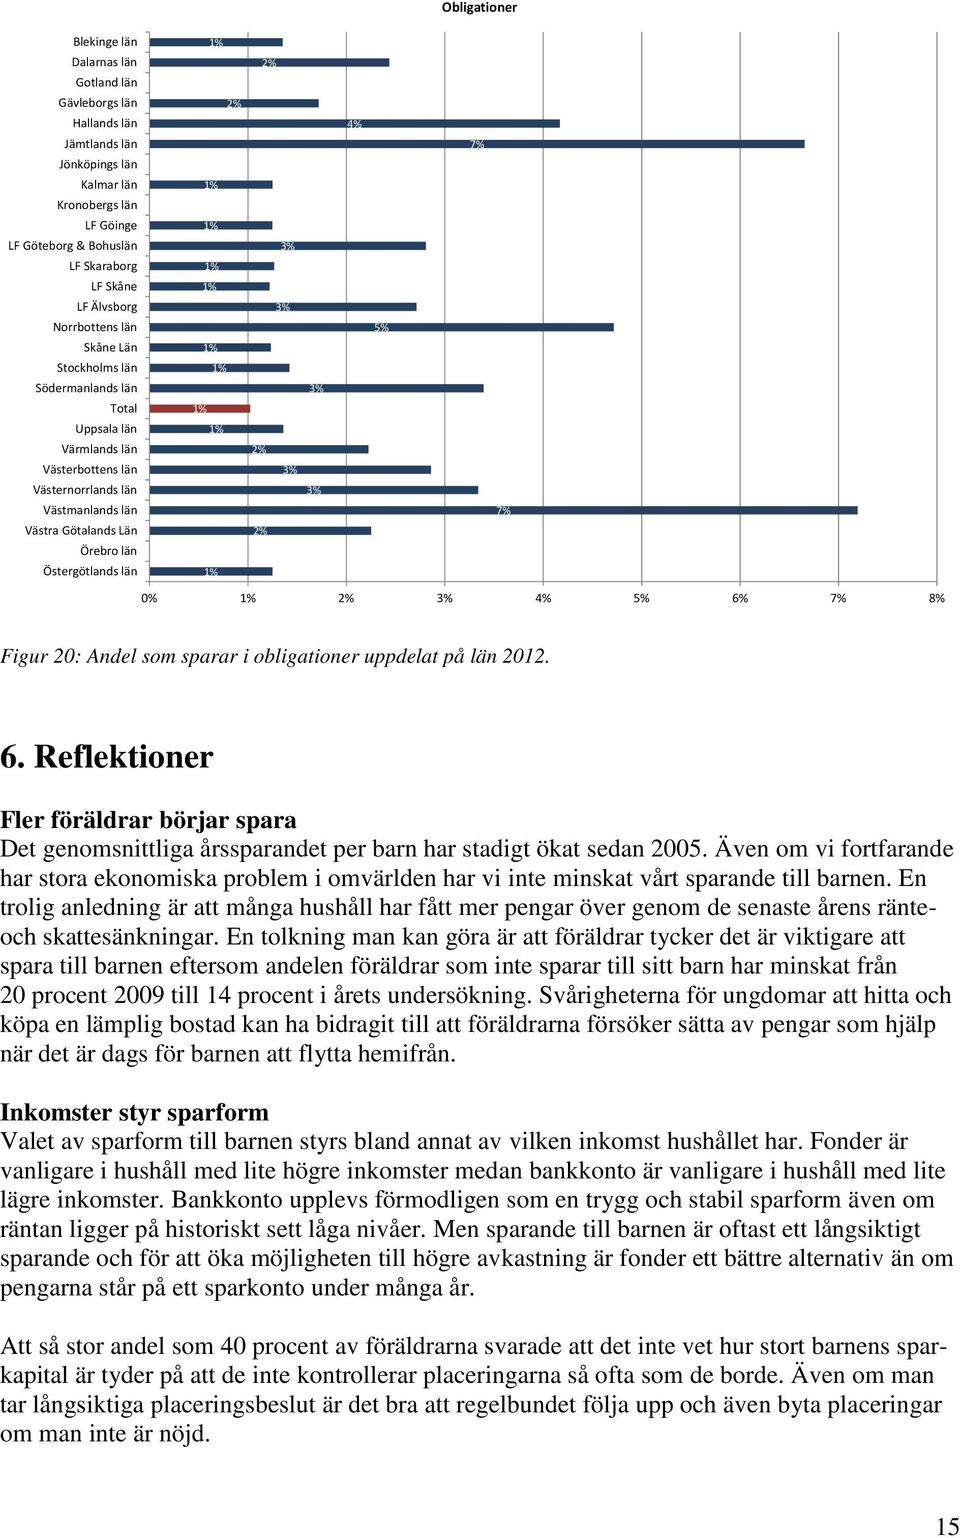 Östergötlands län 2% 2% 2% 2% 5% 7% 7% 2% 5% 6% 7% 8% Figur 20: Andel som sparar i obligationer uppdelat på län 2012. 6. Reflektioner Fler föräldrar börjar spara Det genomsnittliga årssparandet per barn har stadigt ökat sedan 2005.